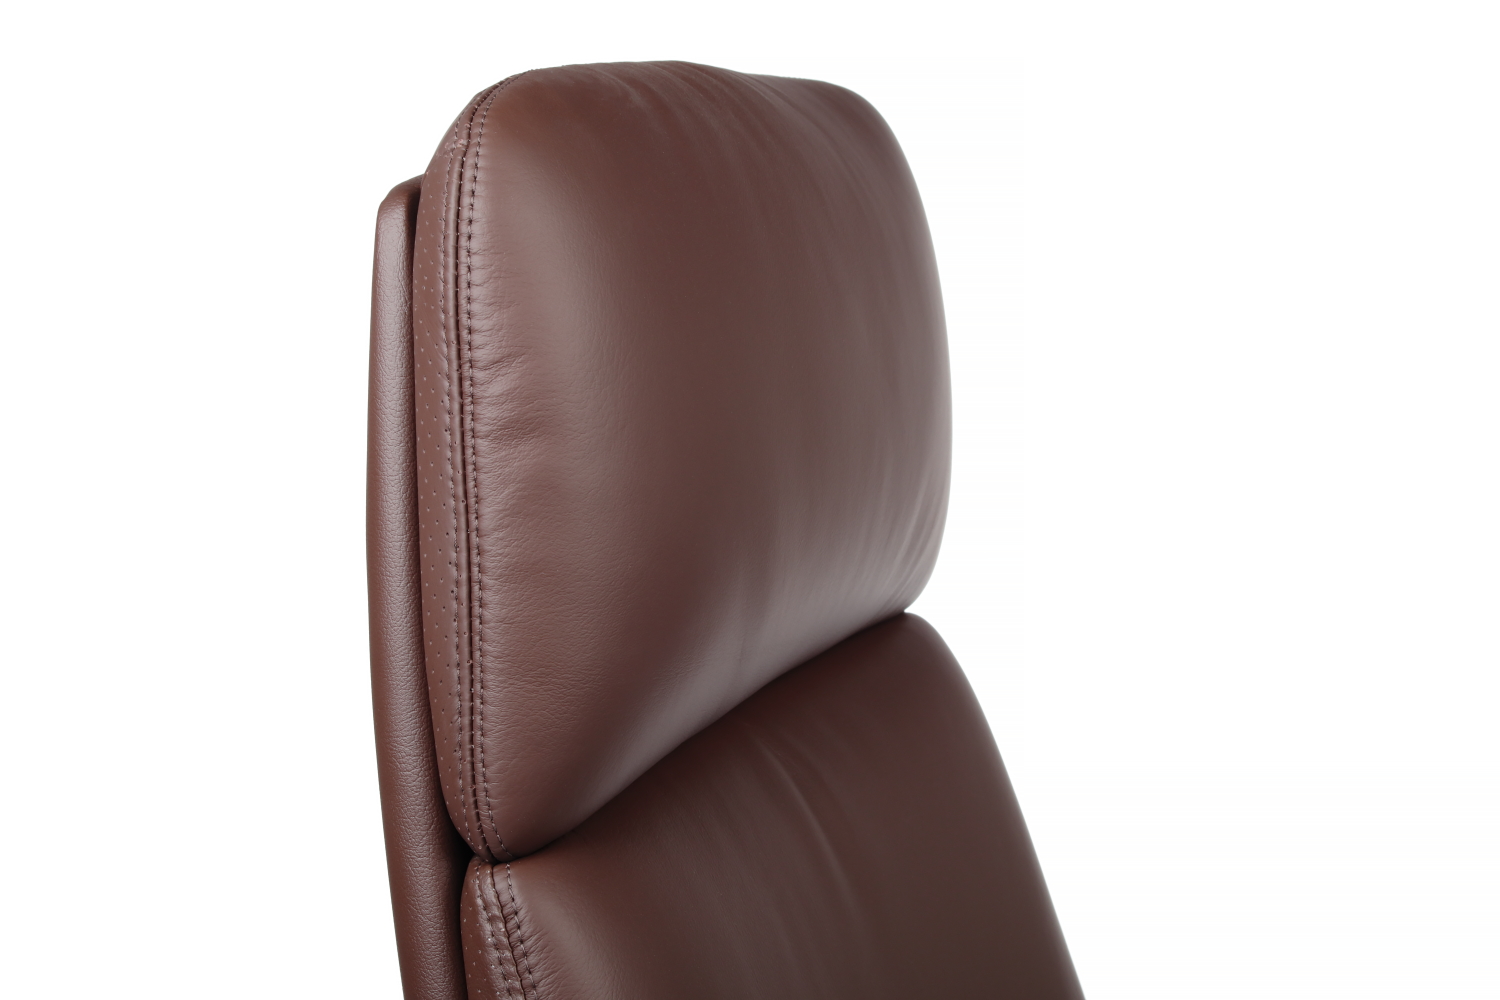 Кресло руководителя RIVA DESIGN Pablo A2216-1 натуральная кожа Коричневый